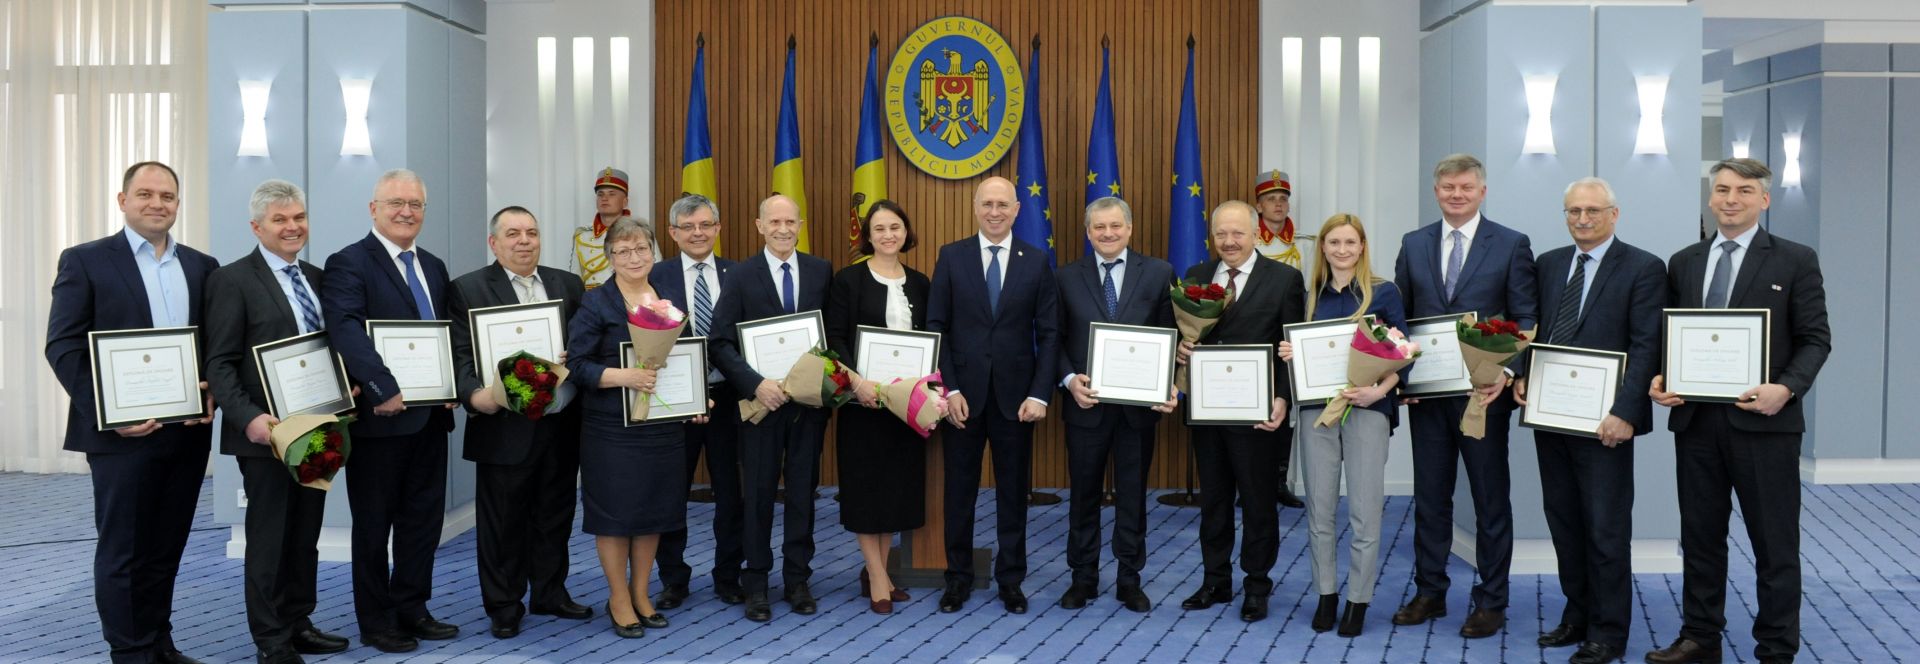 Diploma de Onoare a Guvernului Republicii Moldova pentru membrii comunității universitare